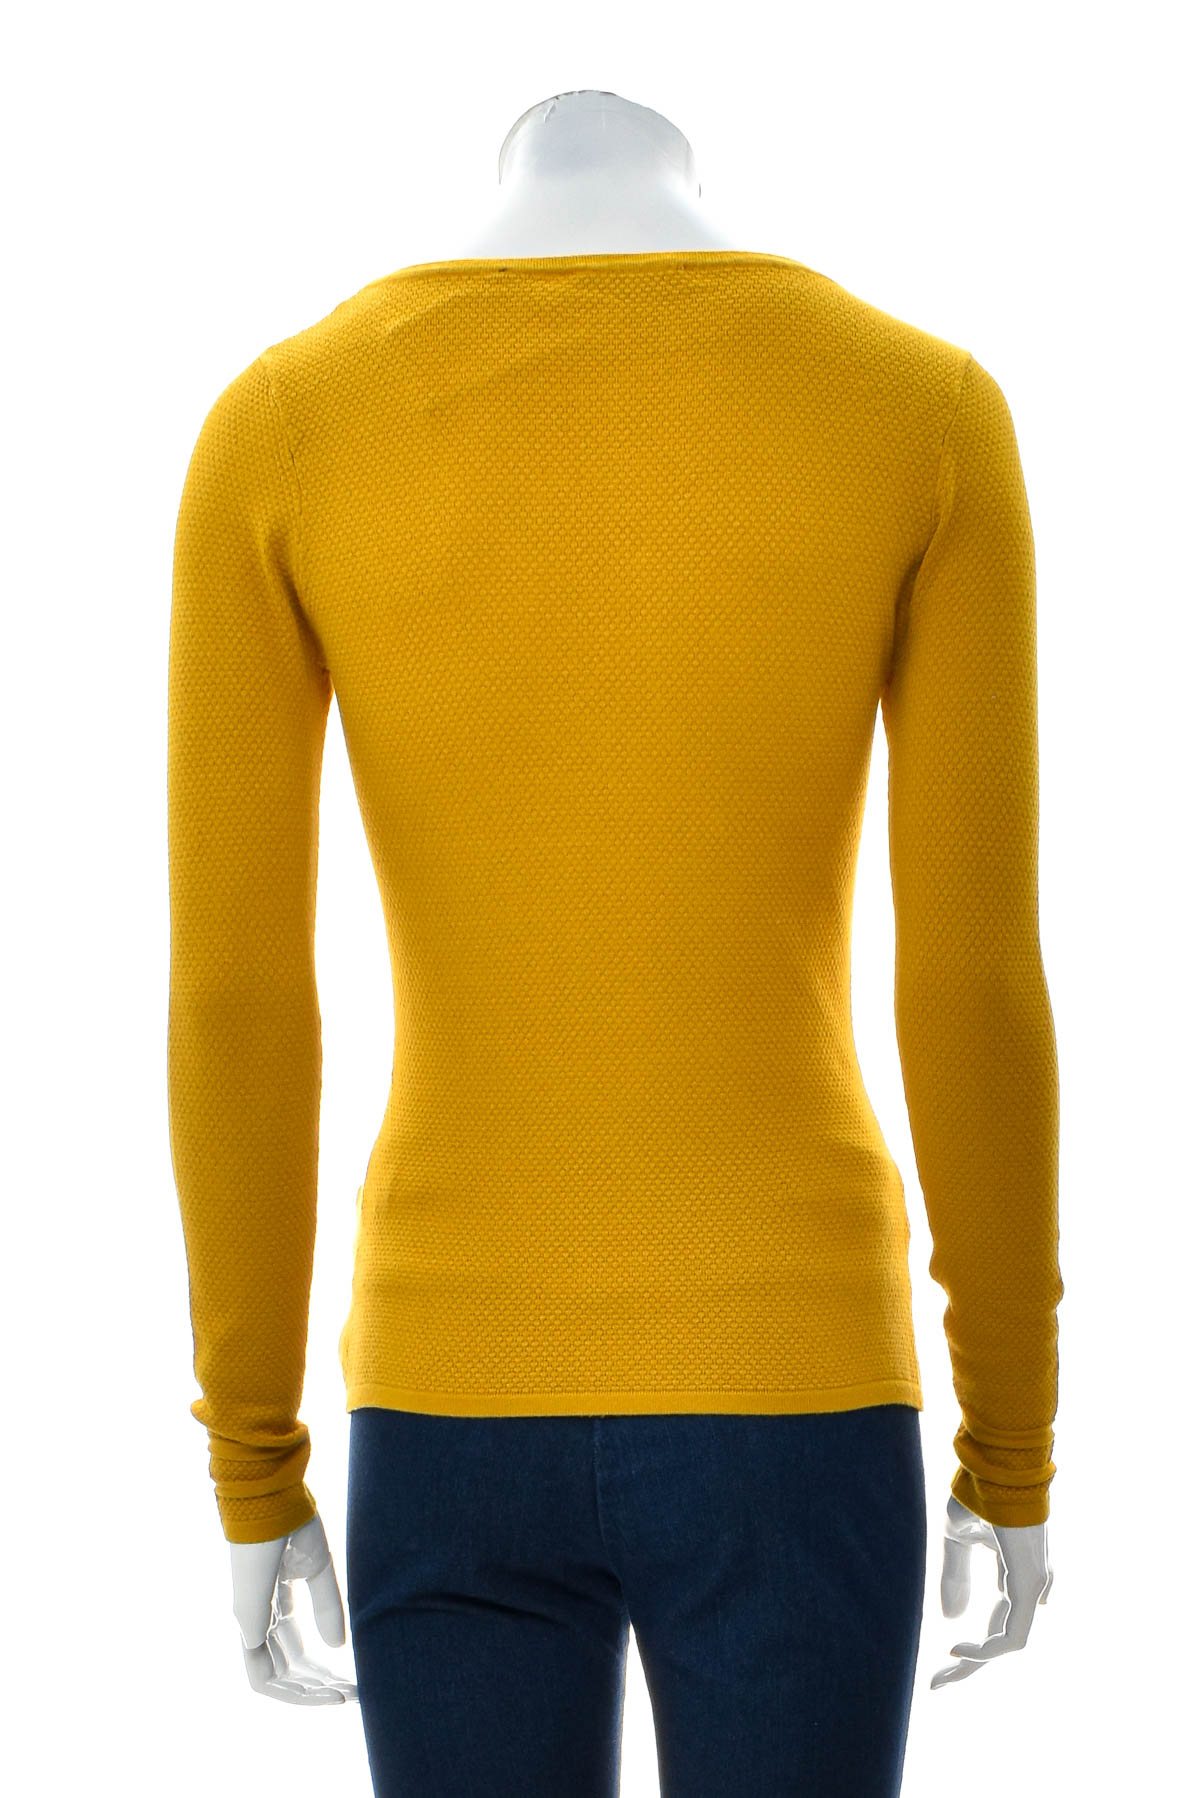 Women's sweater - Zero - 1